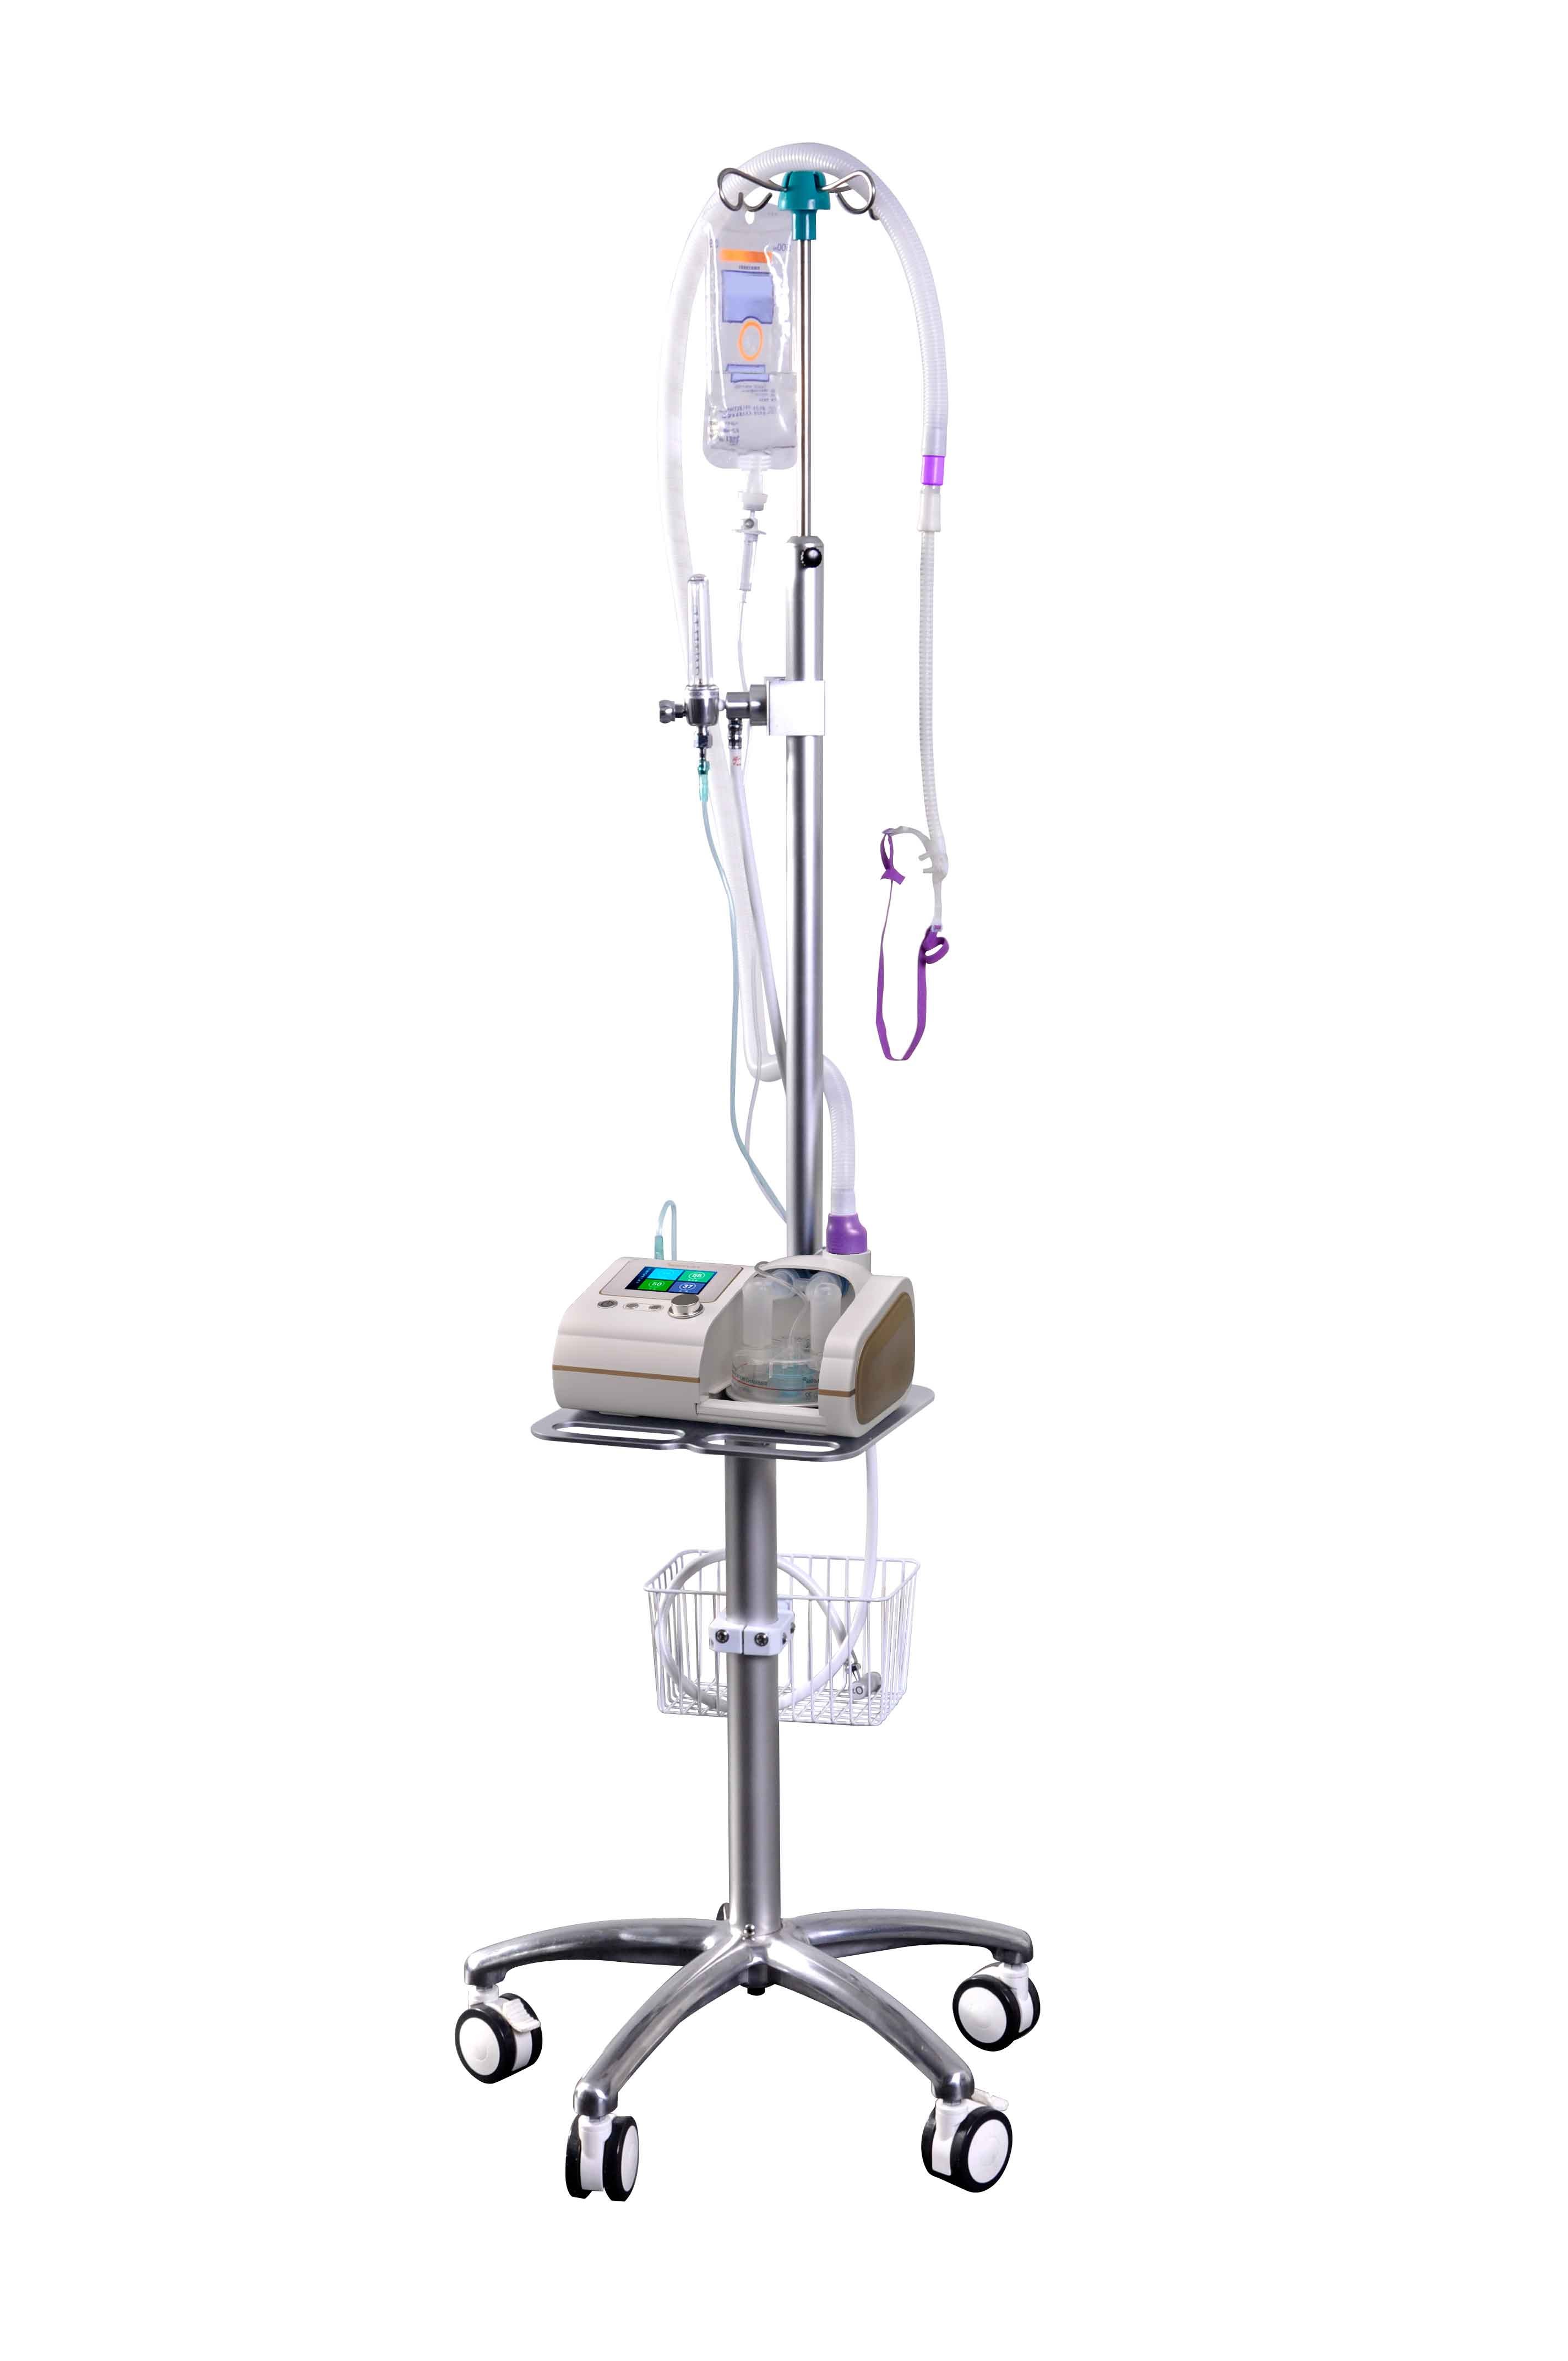 Máy tạo Ôxy dòng cao / Máy thở oxy làm ẩm dòng cao qua canun mũi trong điều trị bệnh nhân suy hô hấp cấp; dùng để hút đàm nhớt; nội soi khí phế quản và đặt nội khí quản (HFNO; HFNC)